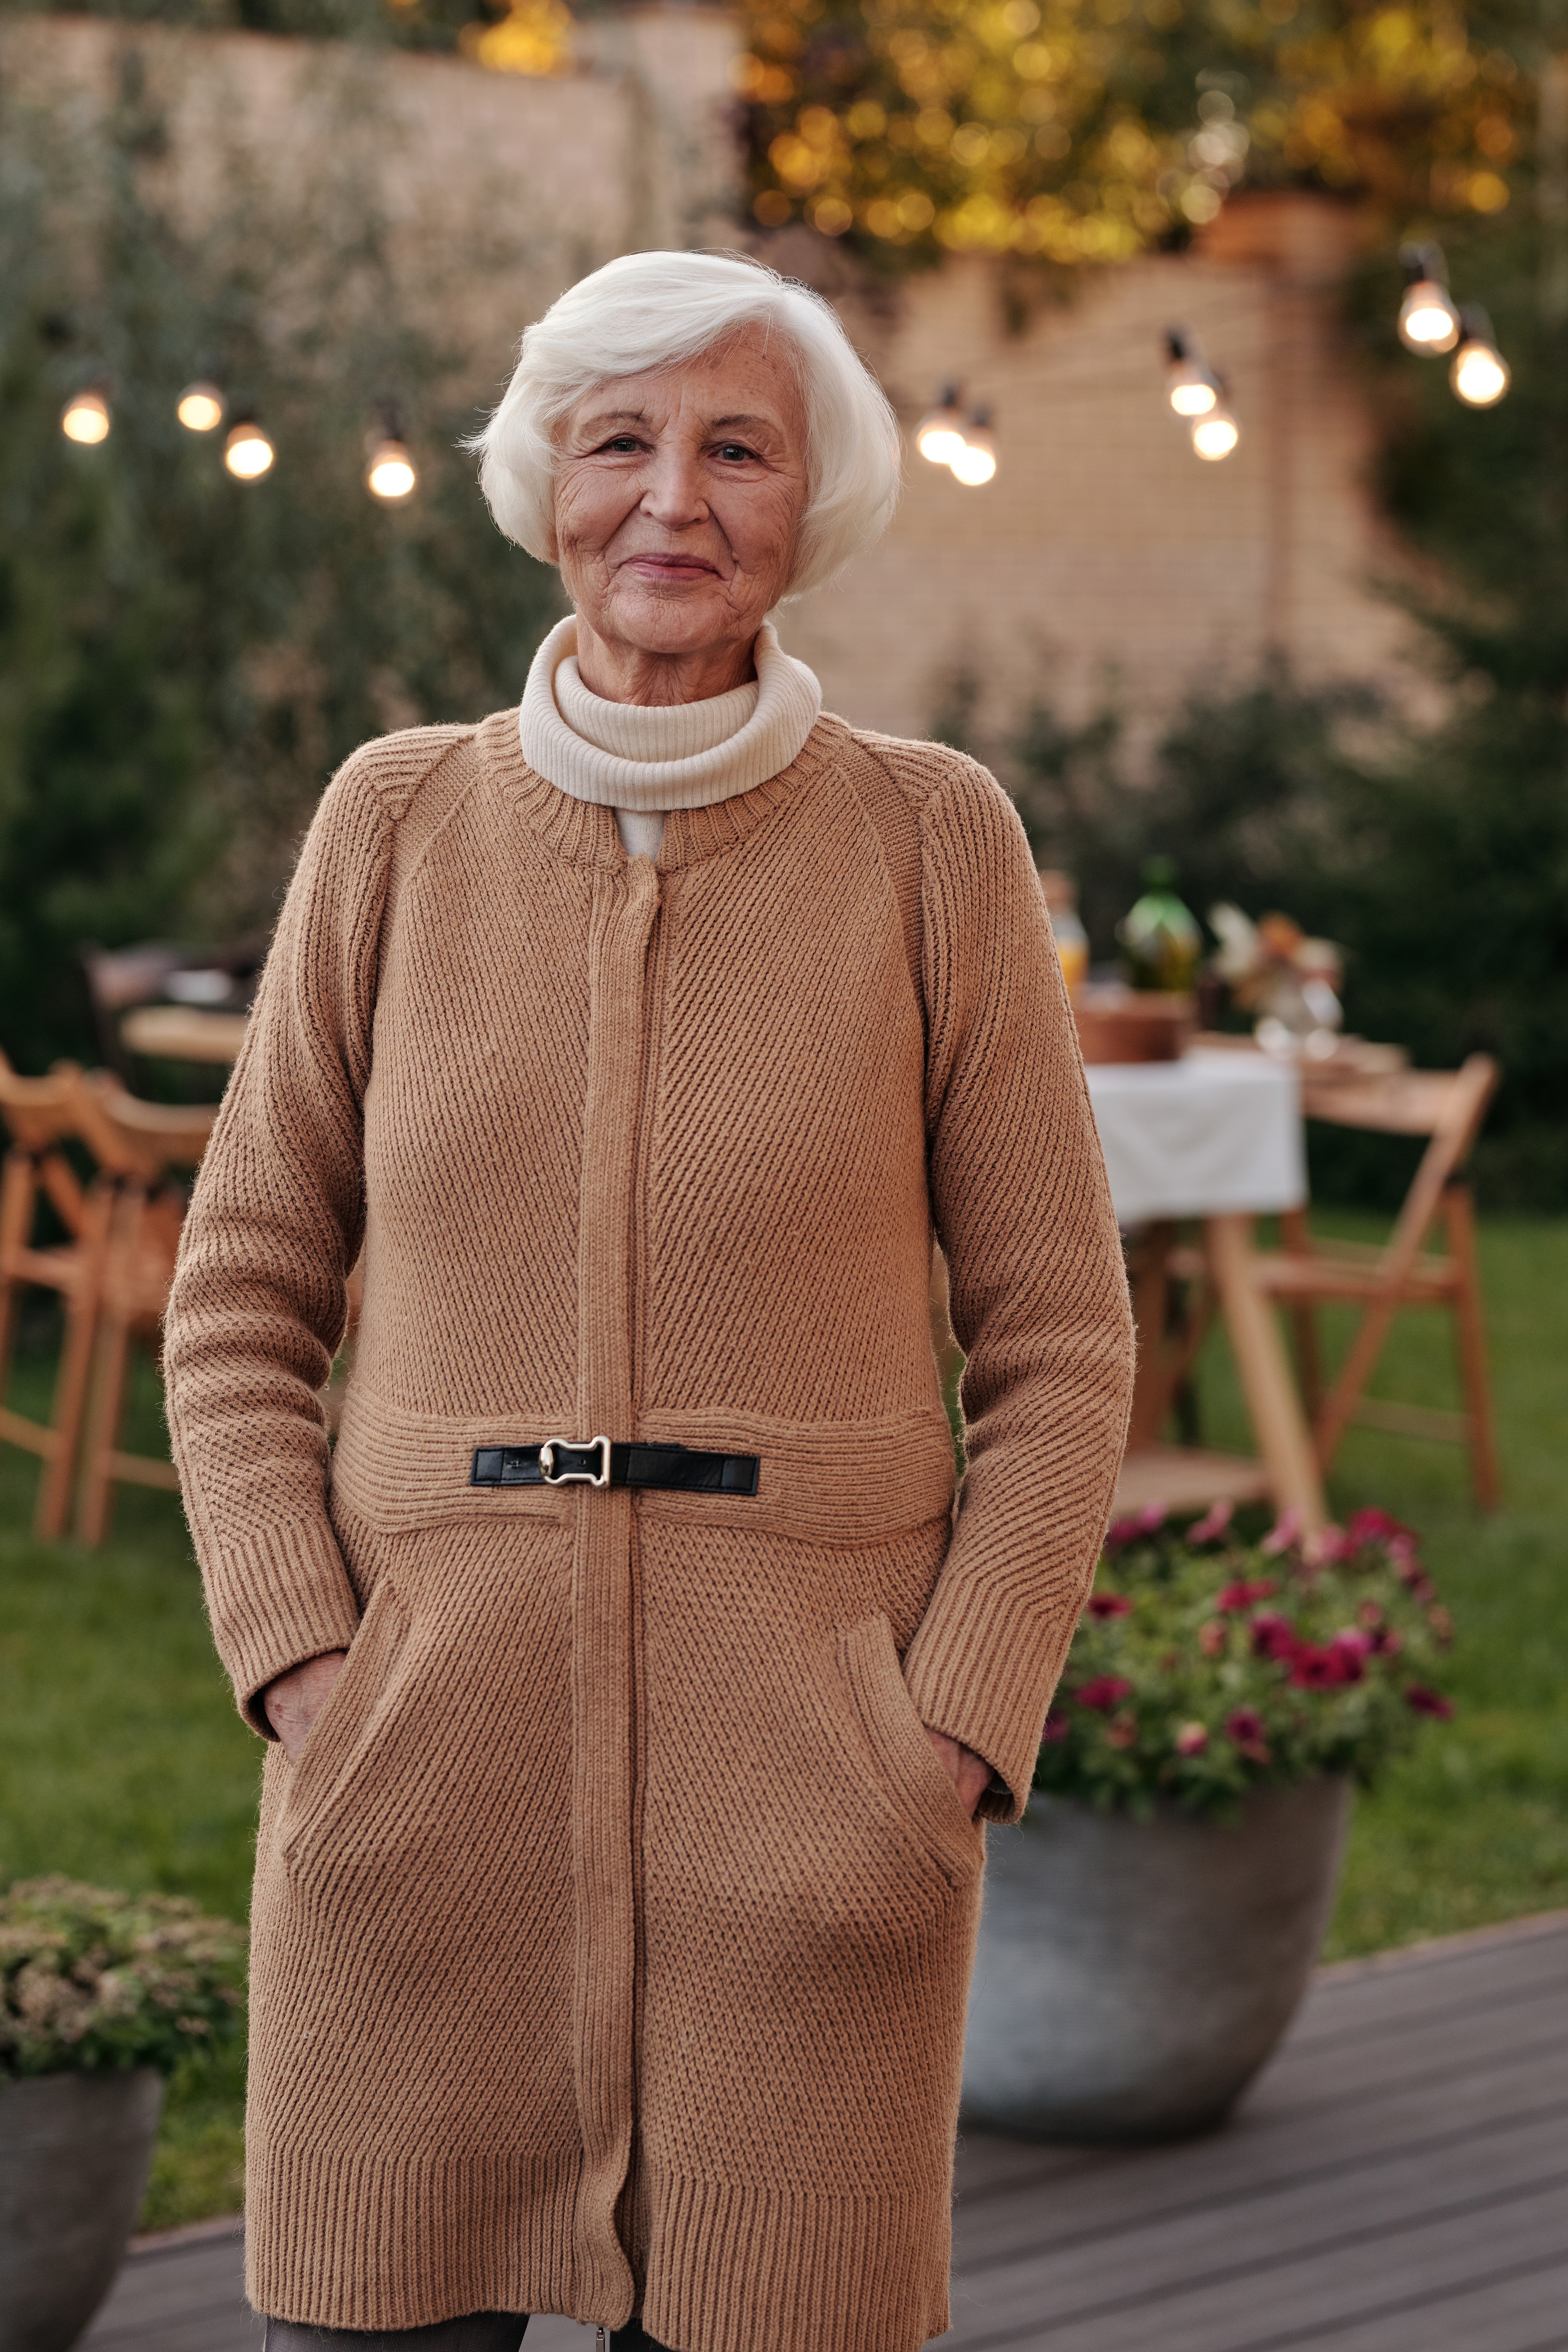 Elderly woman standing in a garden | Photo: Pexels